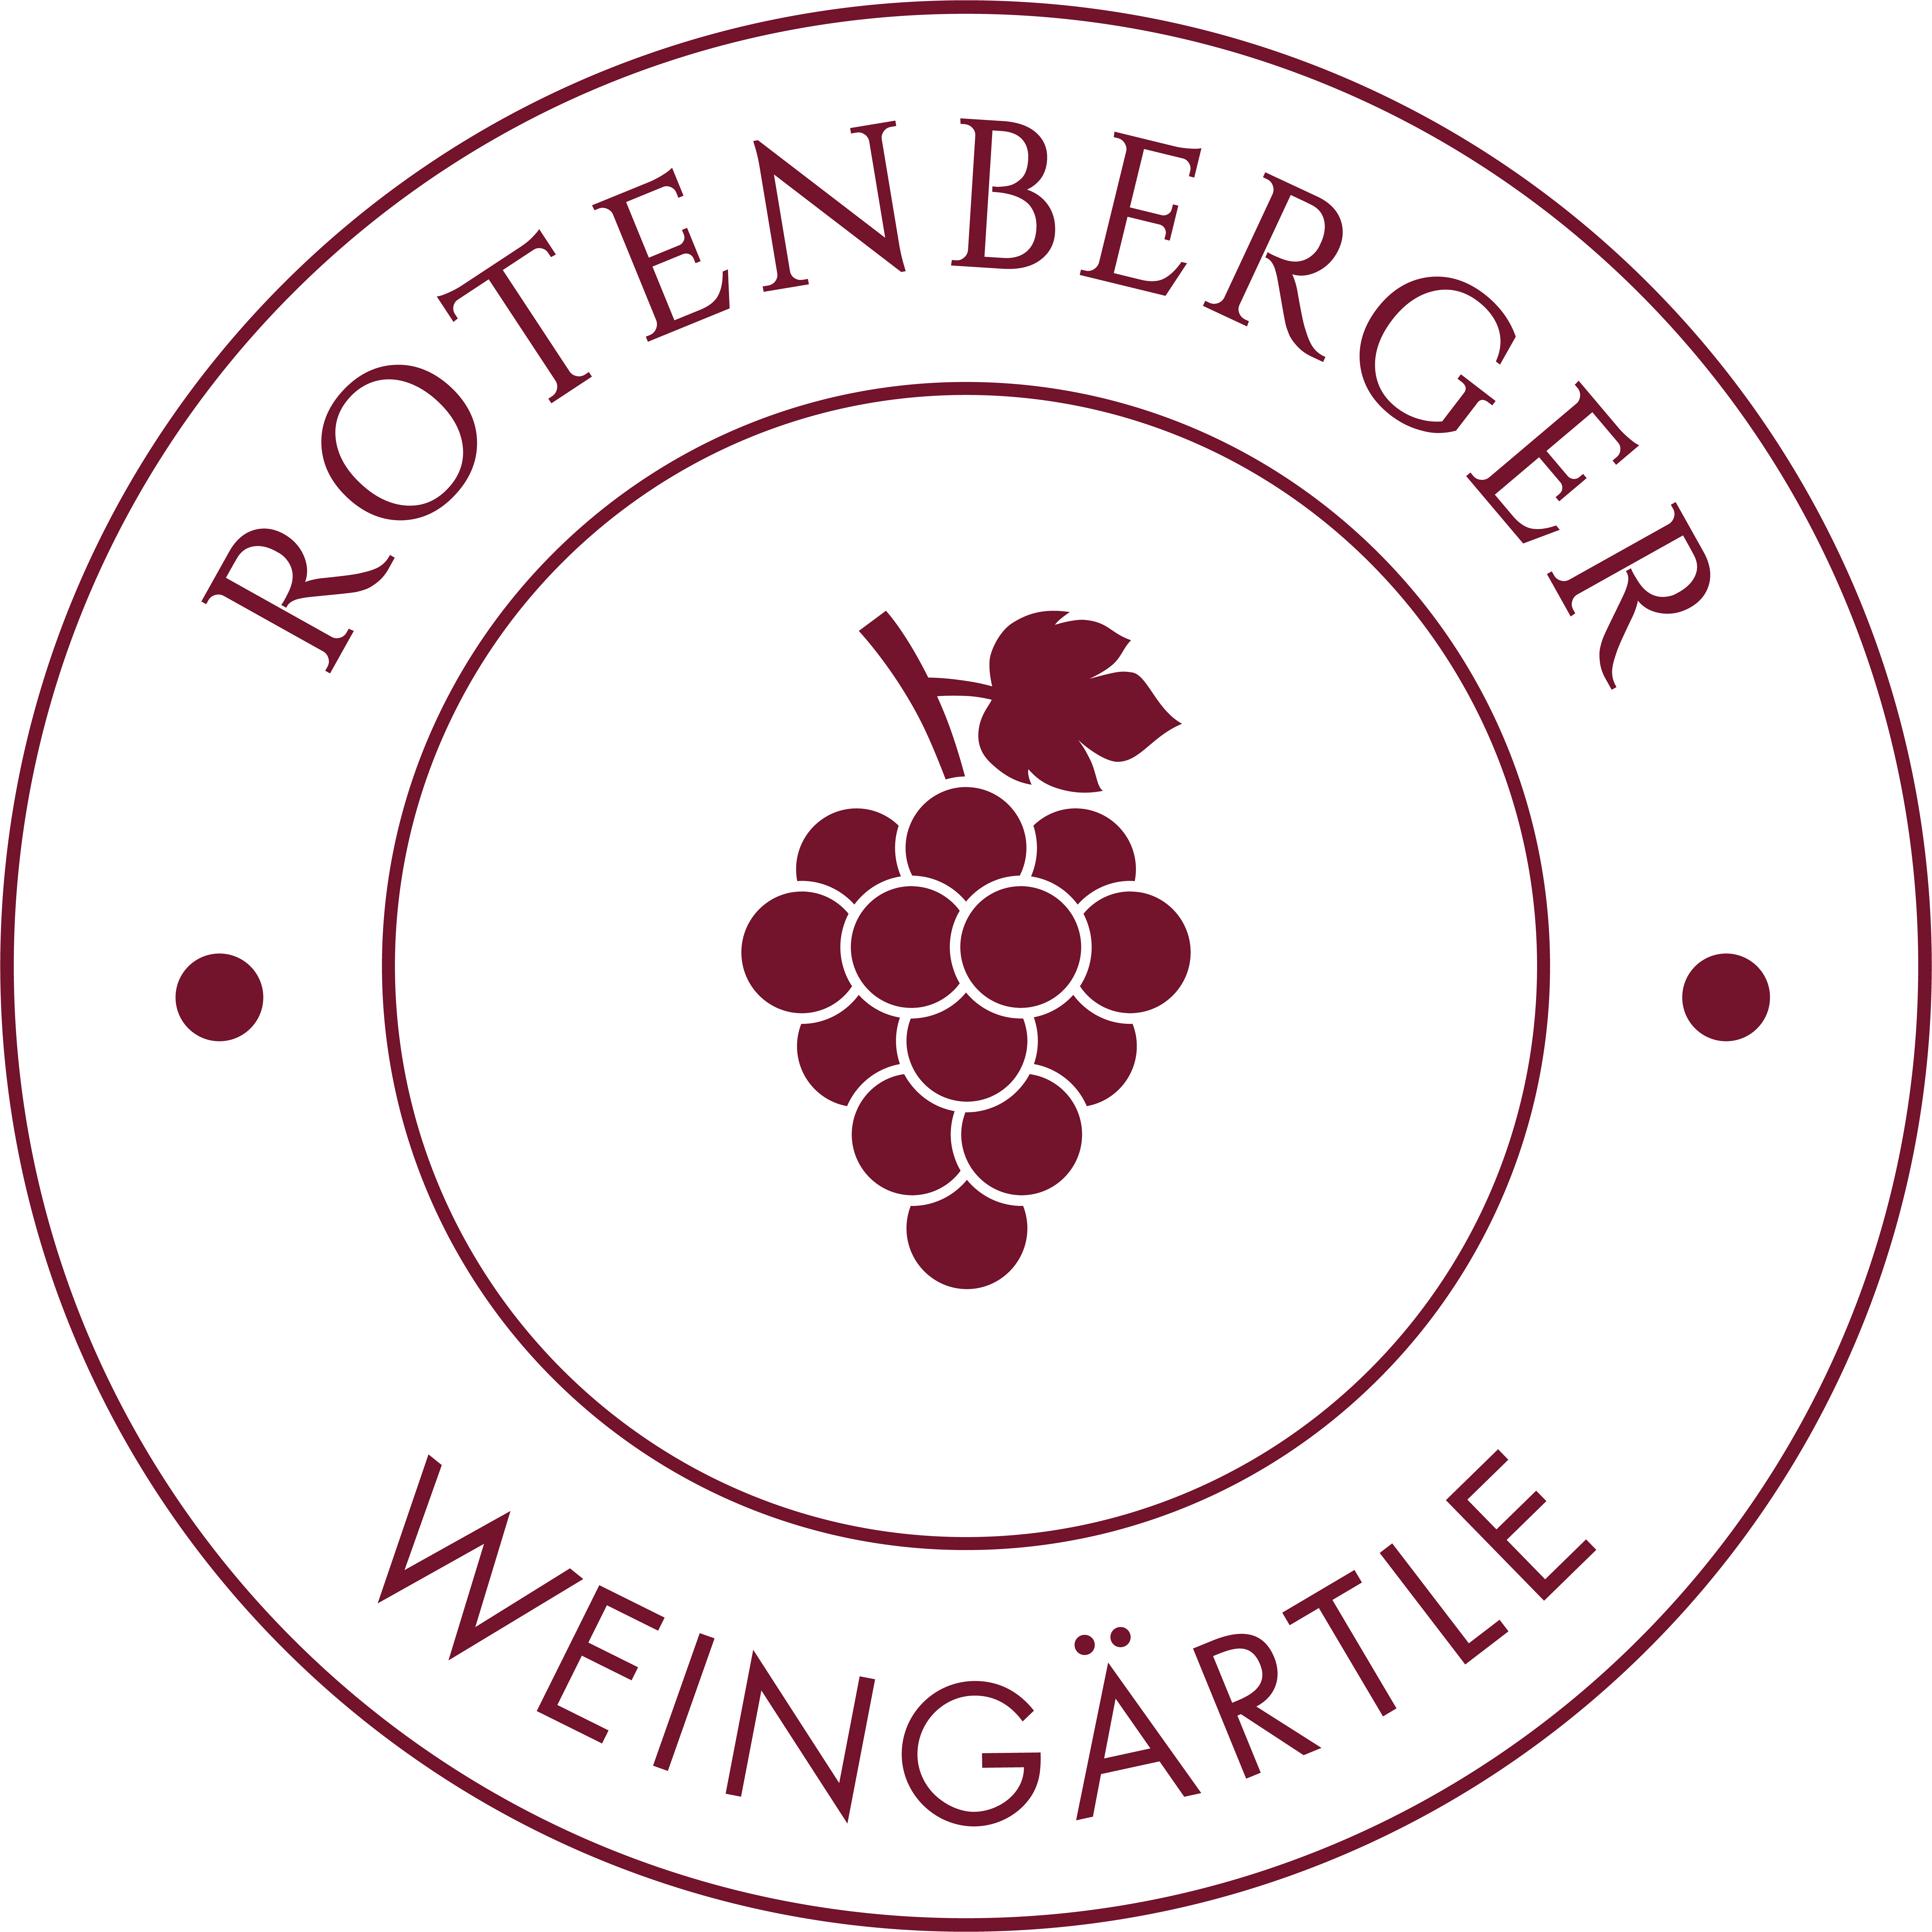 Profilbild von Rotenberger Weingärtle